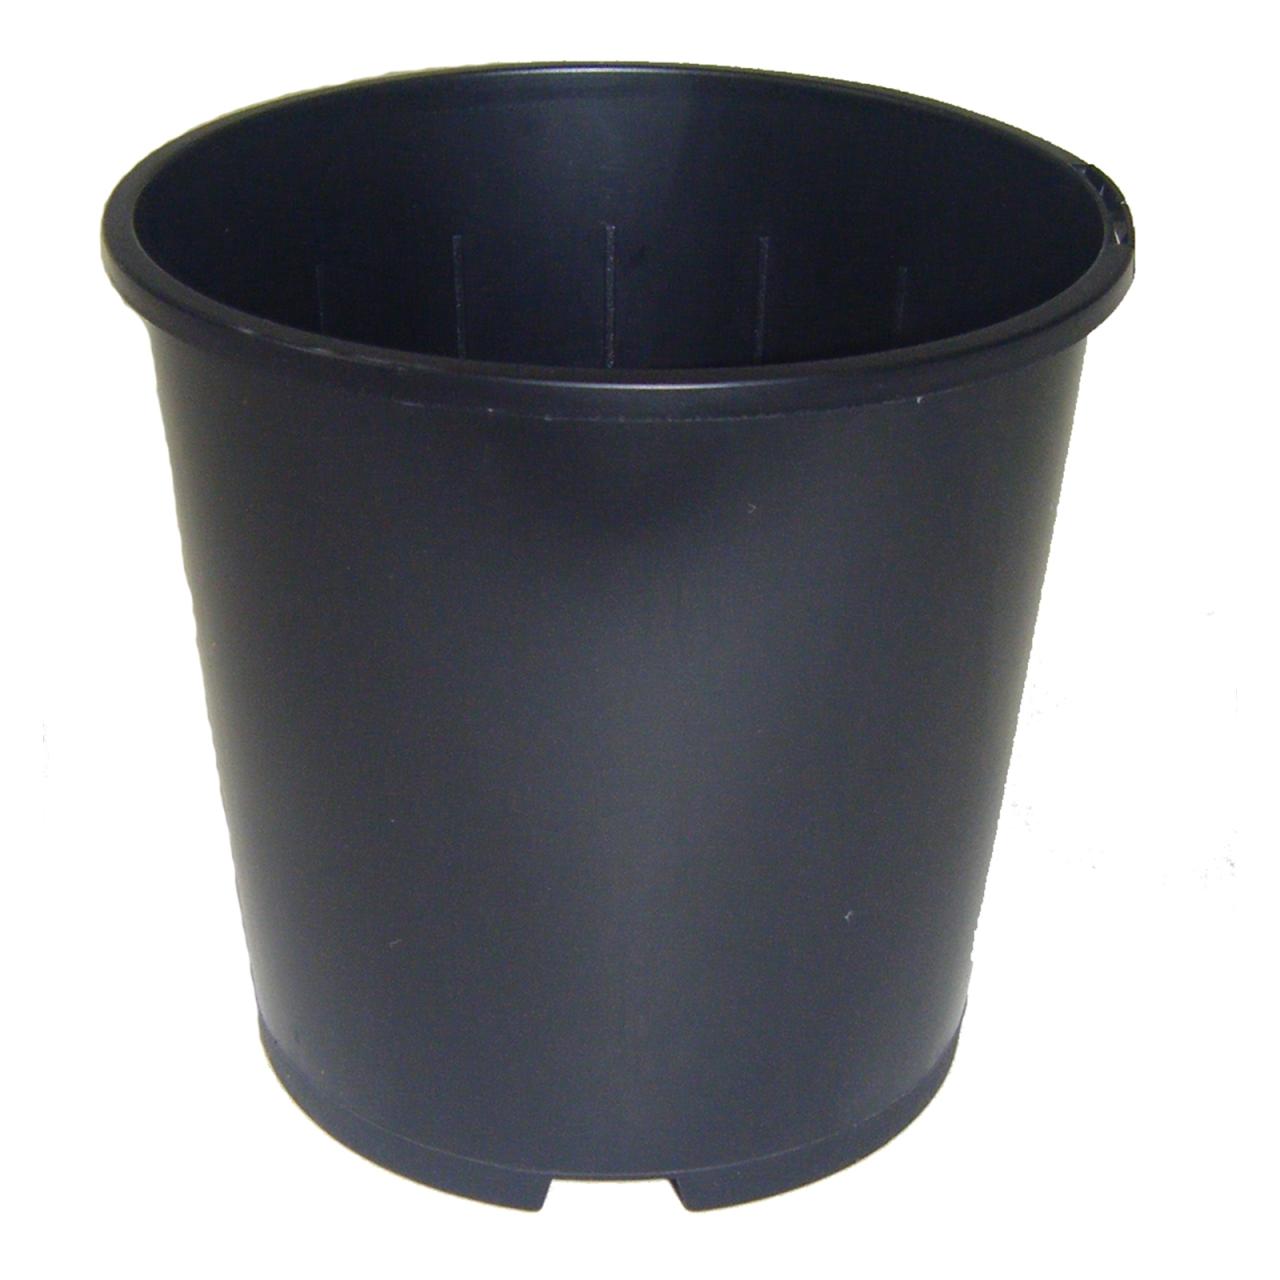 Hanging Plants Indoor | Black Plastic Pot Bunnings: A Versatile and Durable Gardening Essential